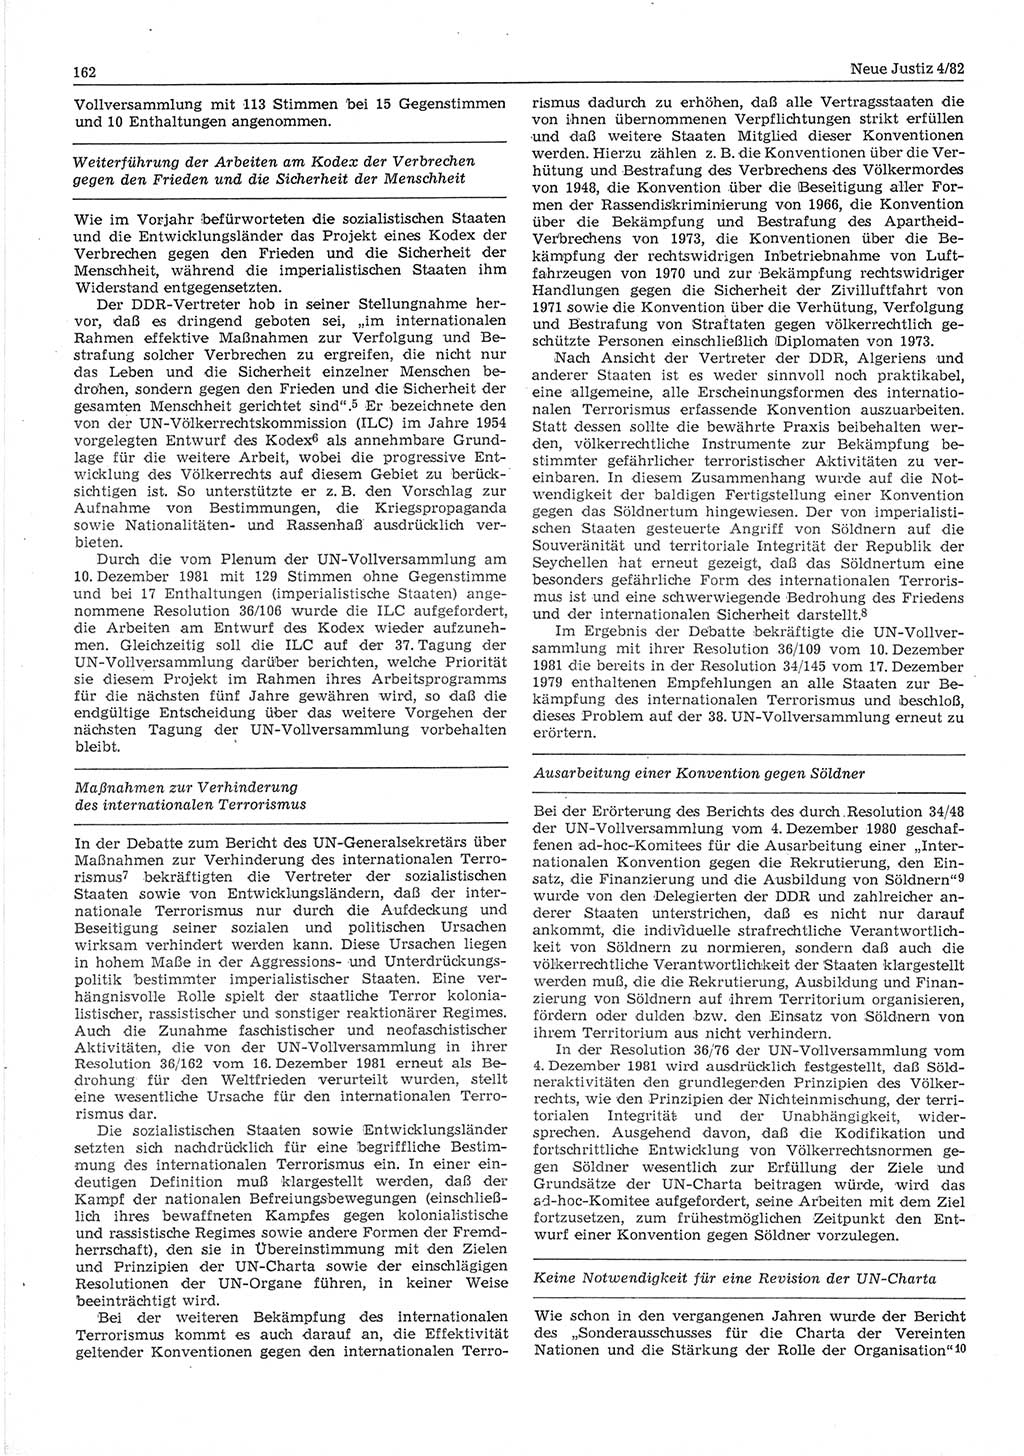 Neue Justiz (NJ), Zeitschrift für sozialistisches Recht und Gesetzlichkeit [Deutsche Demokratische Republik (DDR)], 36. Jahrgang 1982, Seite 162 (NJ DDR 1982, S. 162)